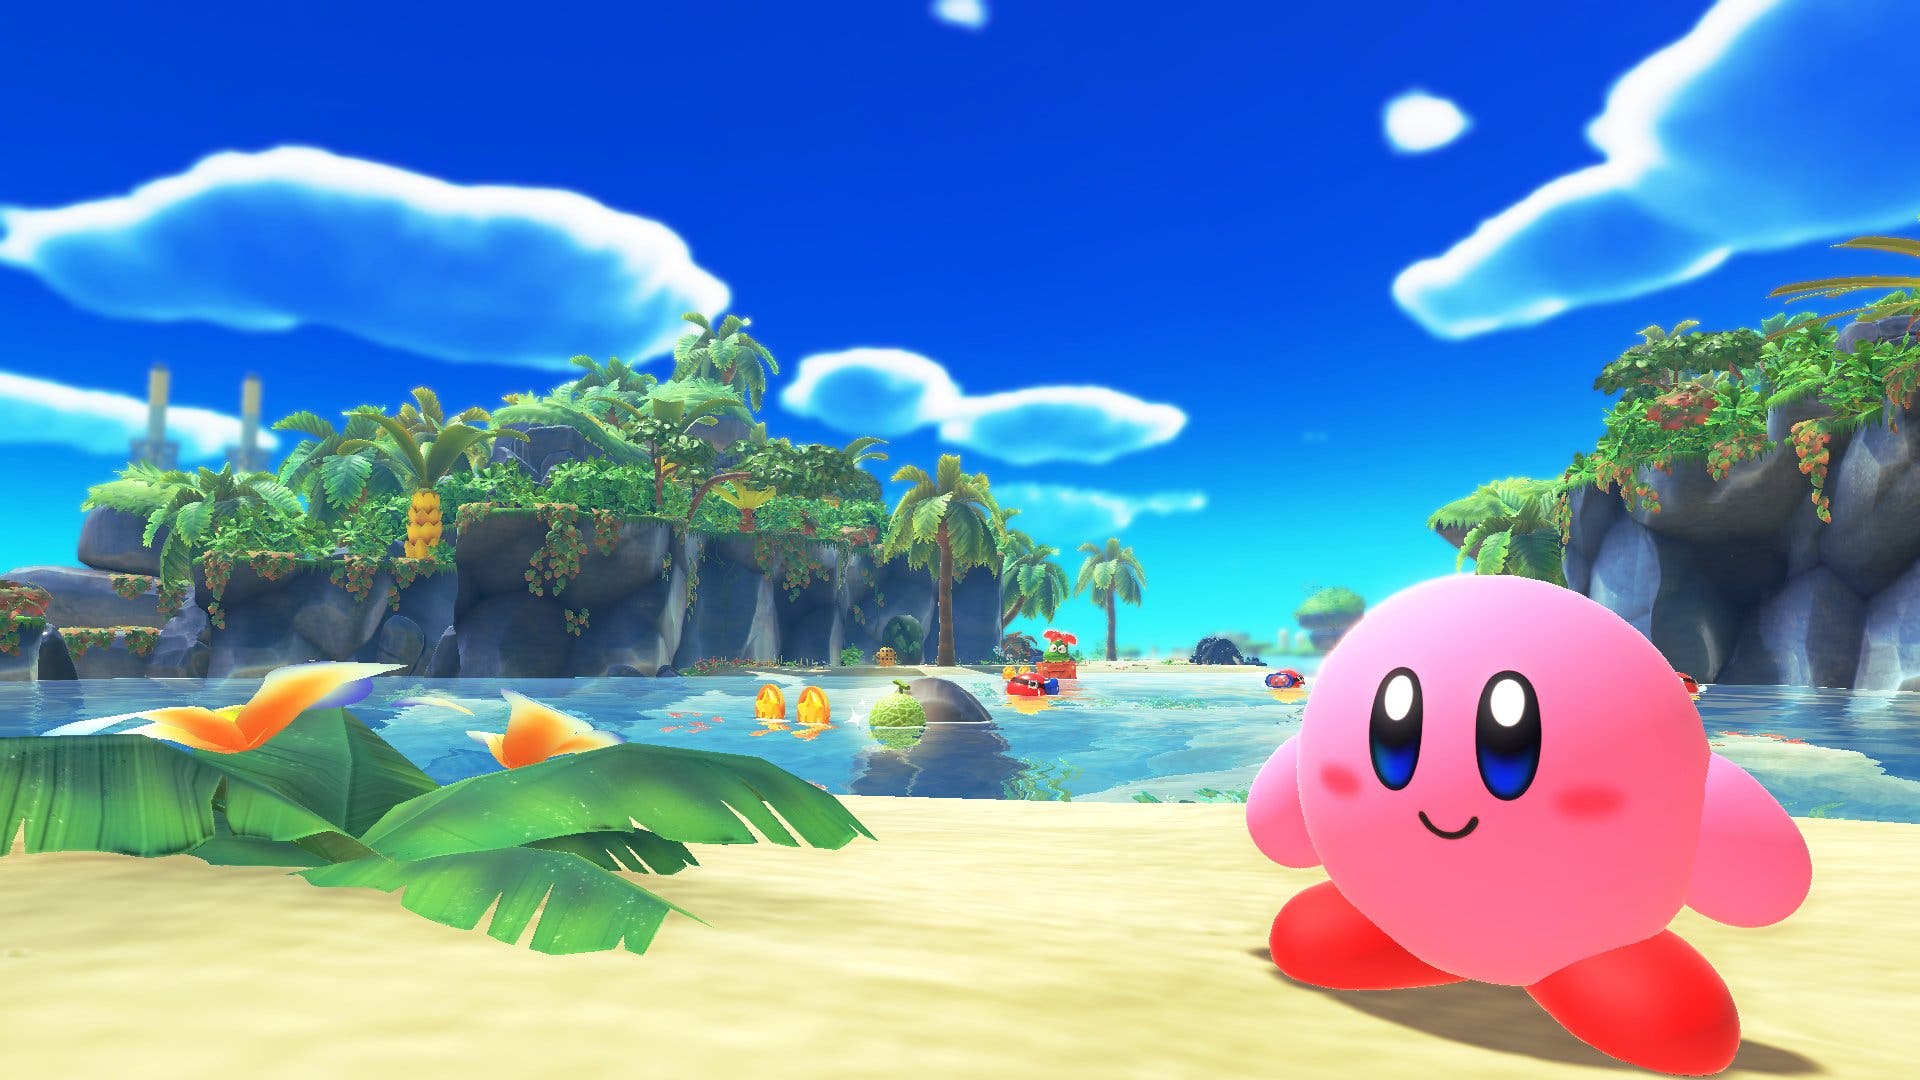 Nuevos iconos de Kirby y la tierra olvidada llegan a Nintendo Switch Online